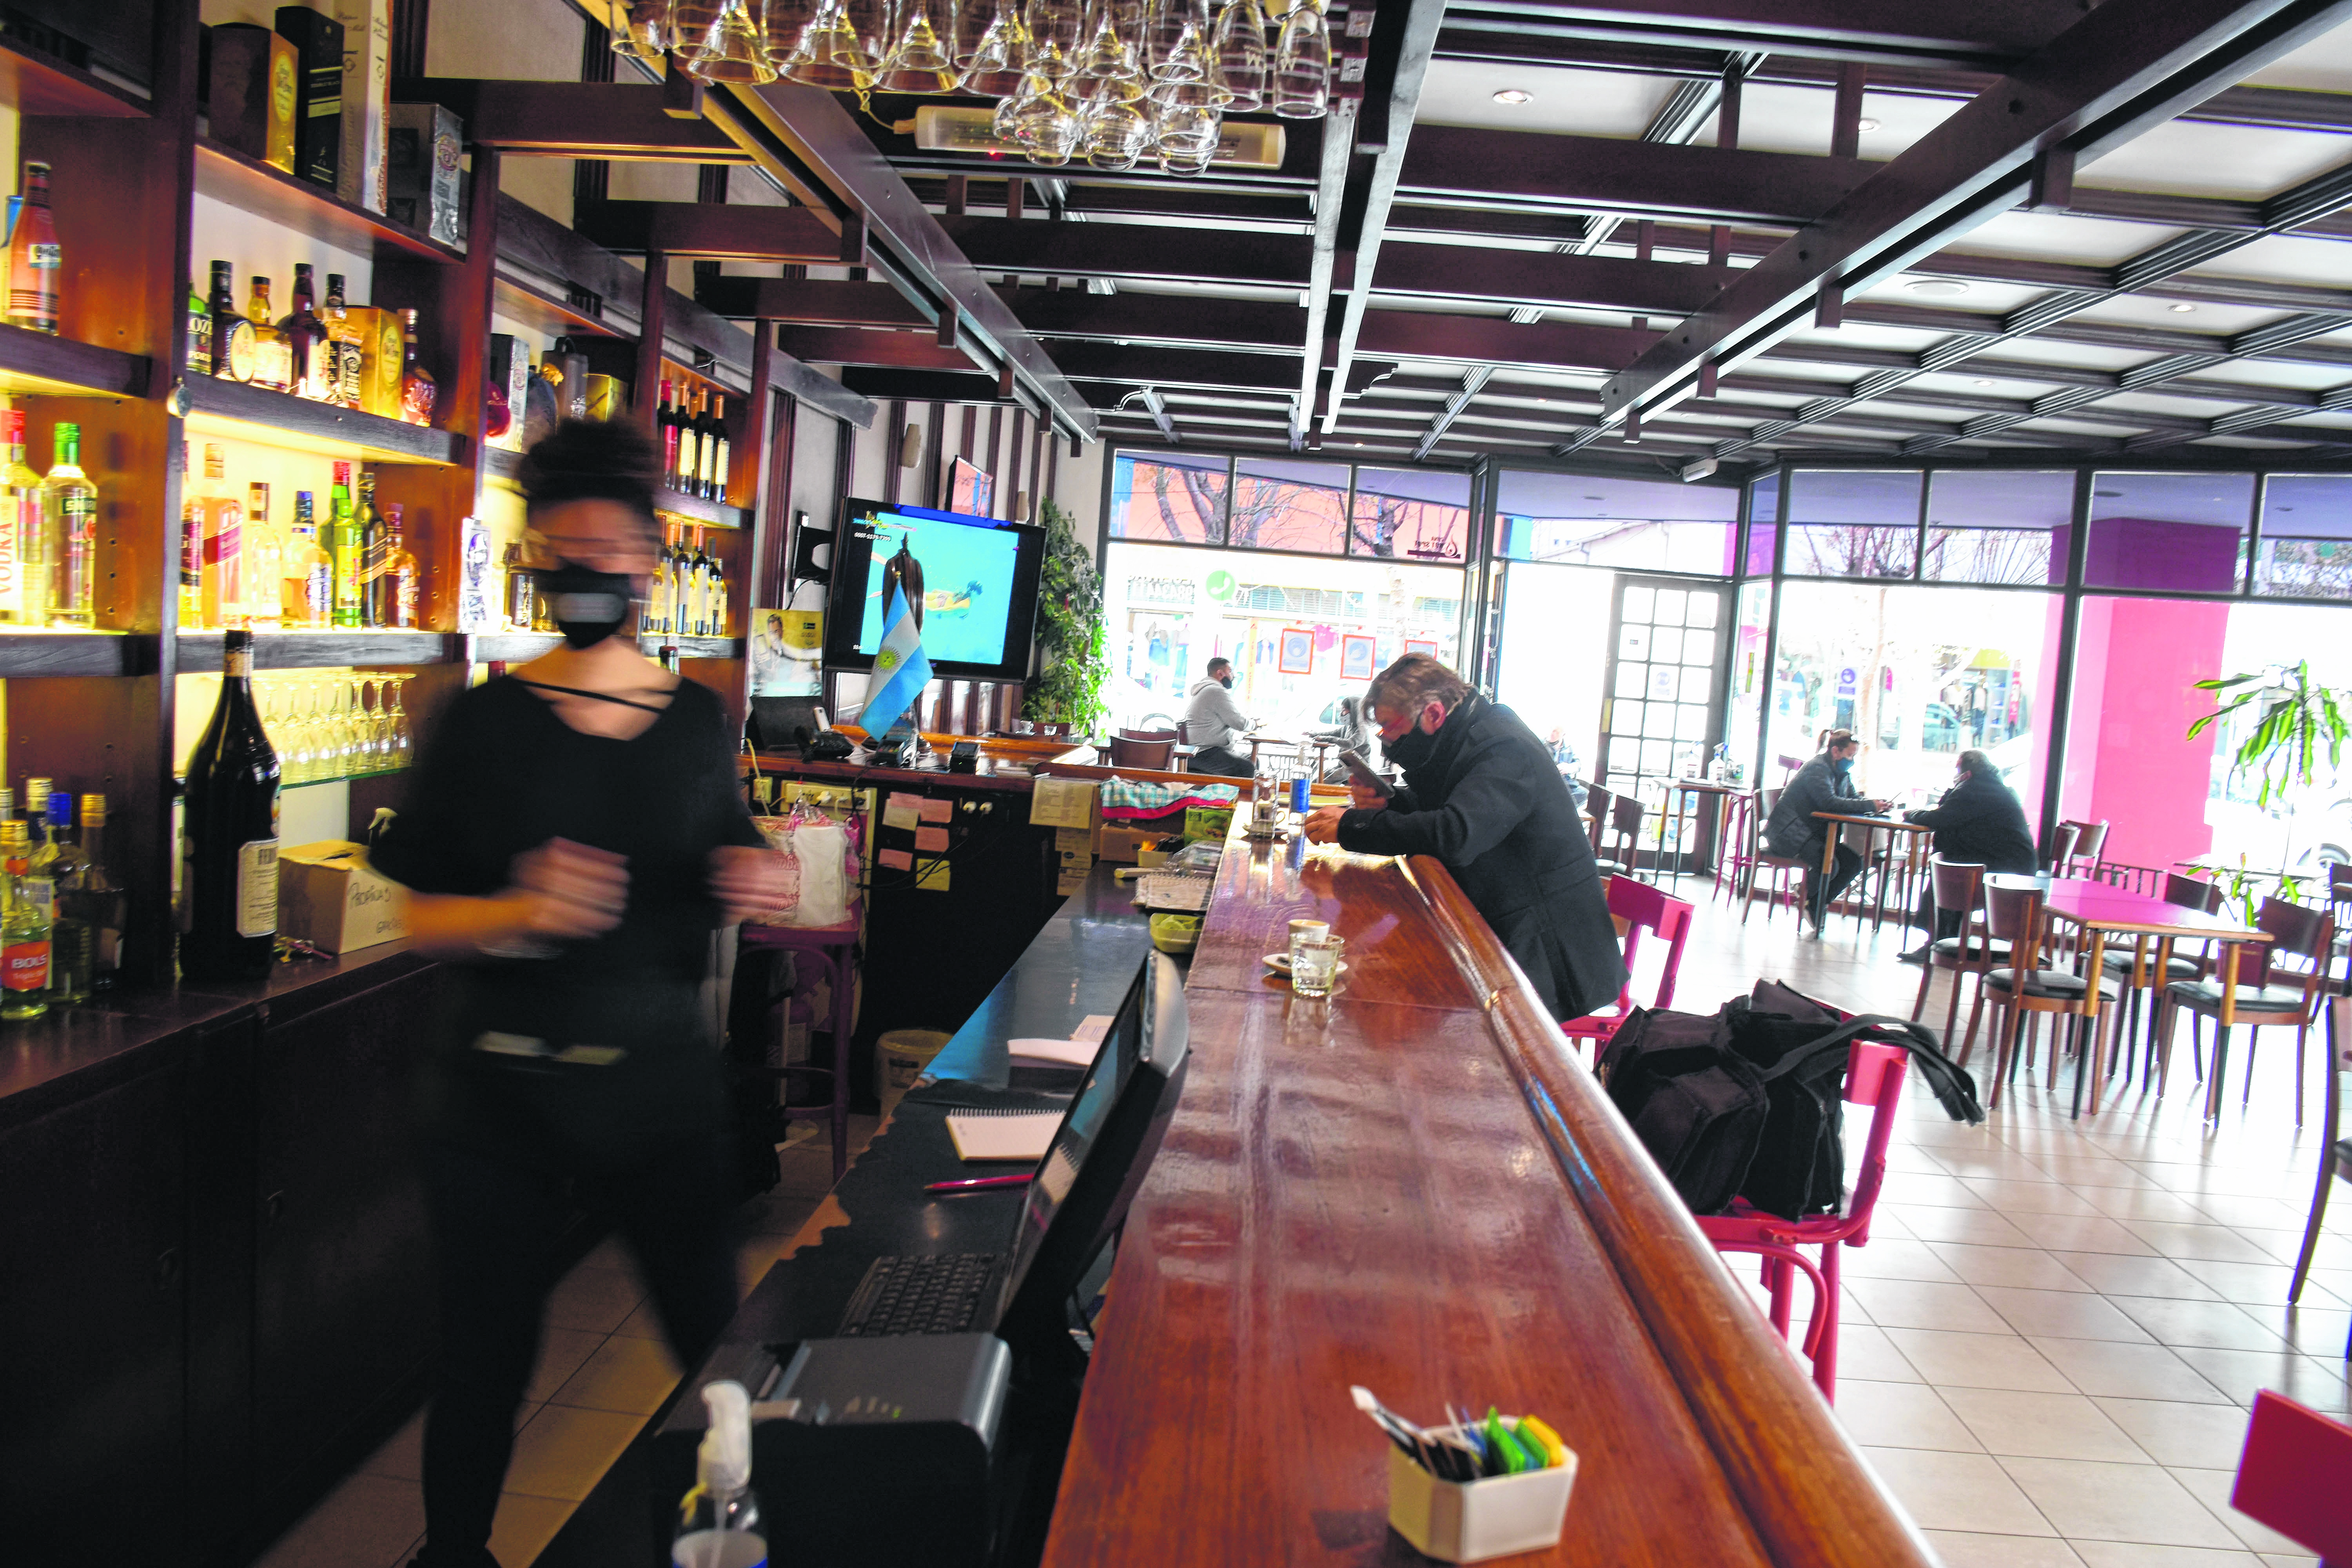 Los bares, confiterías y restaurantes podrán atender a sus clientes dentro de los locales entre jueves y sábados hasta las 24.